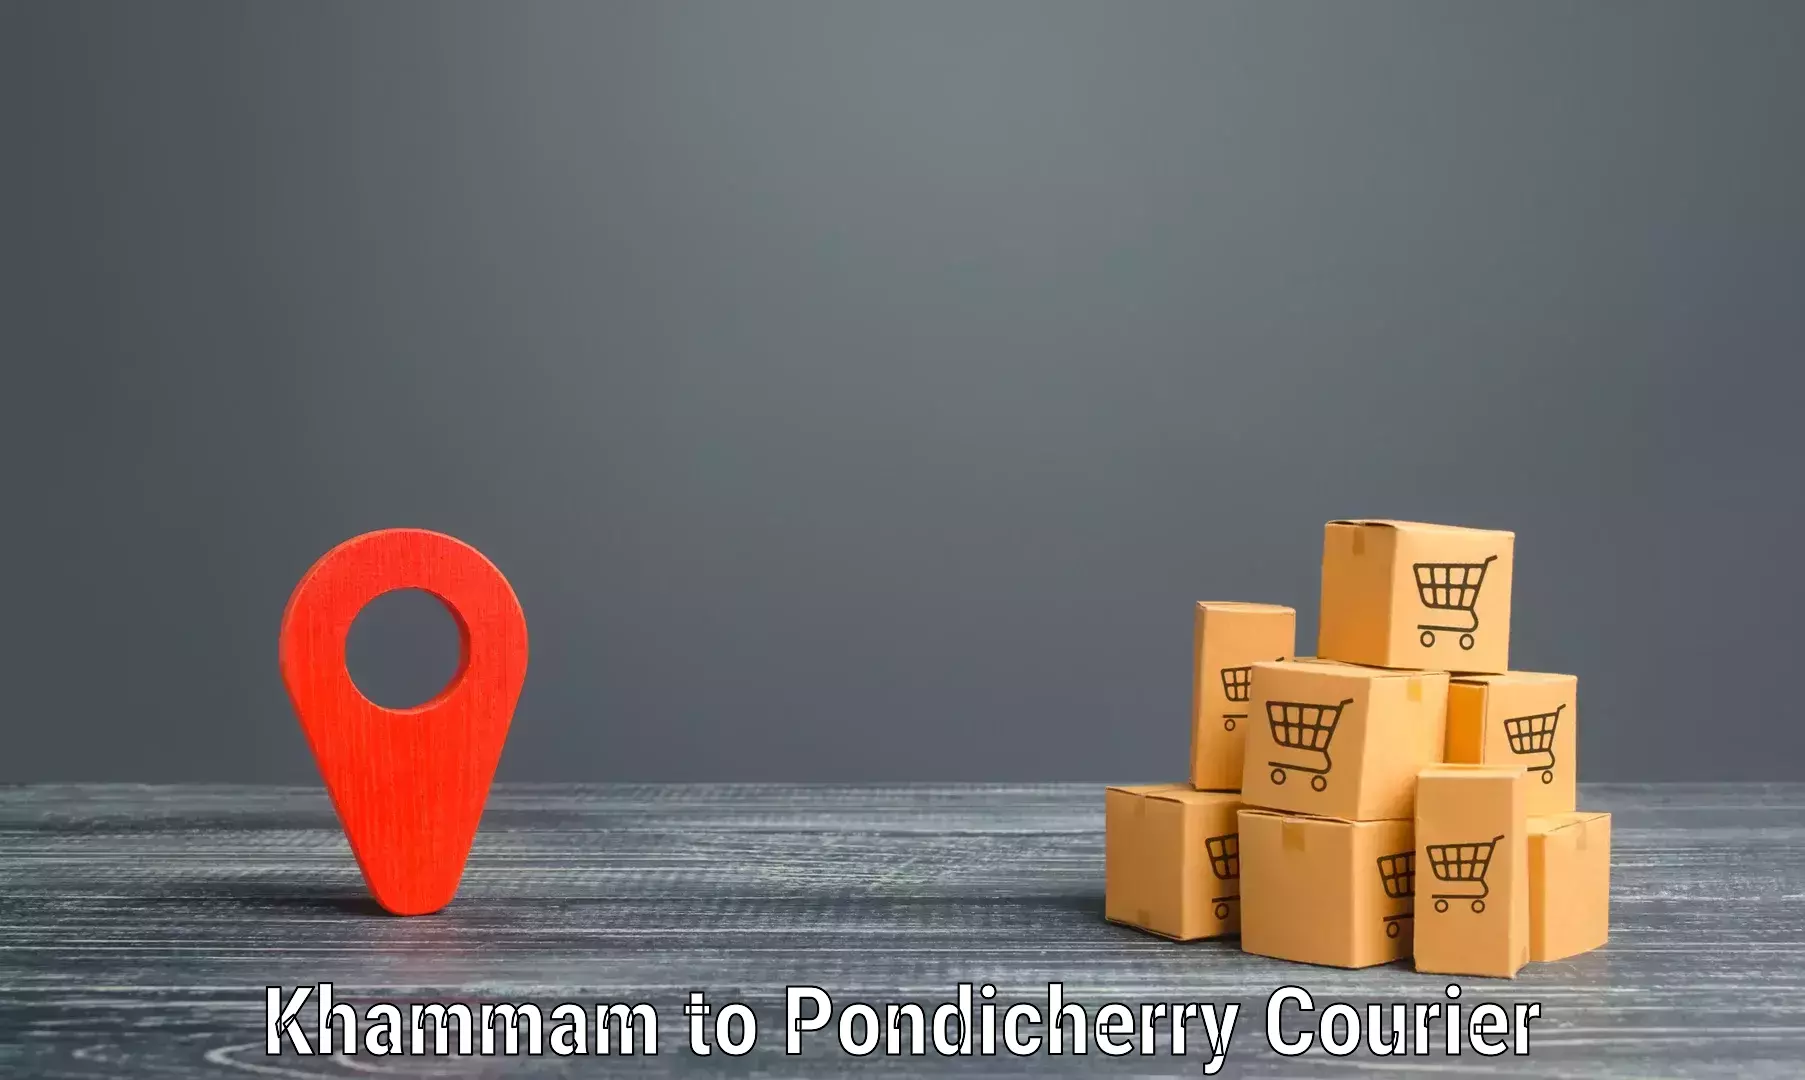 Modern parcel services Khammam to NIT Puducherry